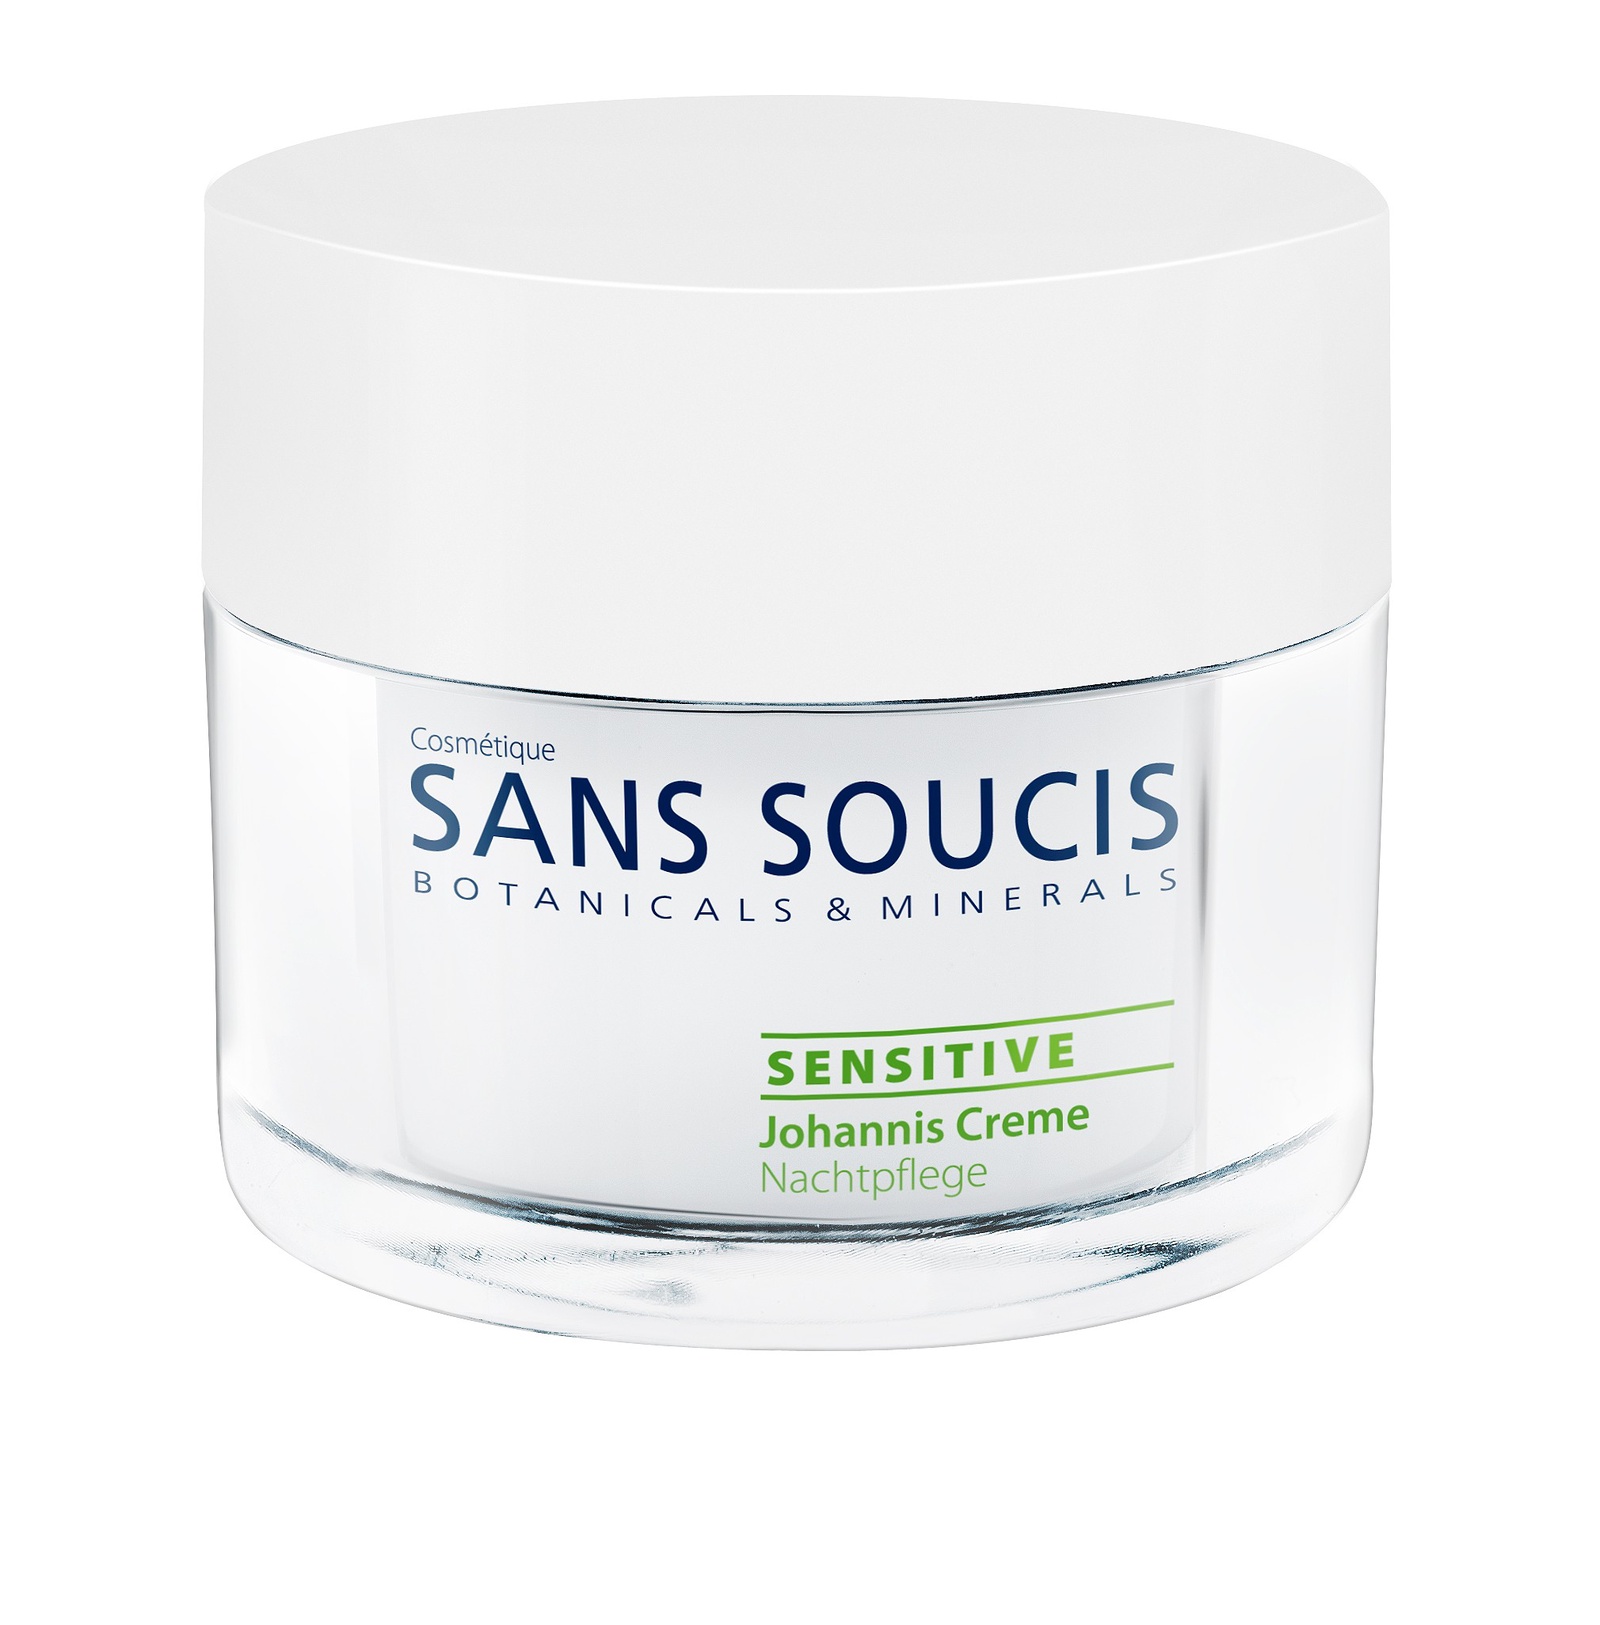 Ночной крем Sans Soucis Sensitive, с экстрактом зверобоя, для чувствительной кожи, 50 мл